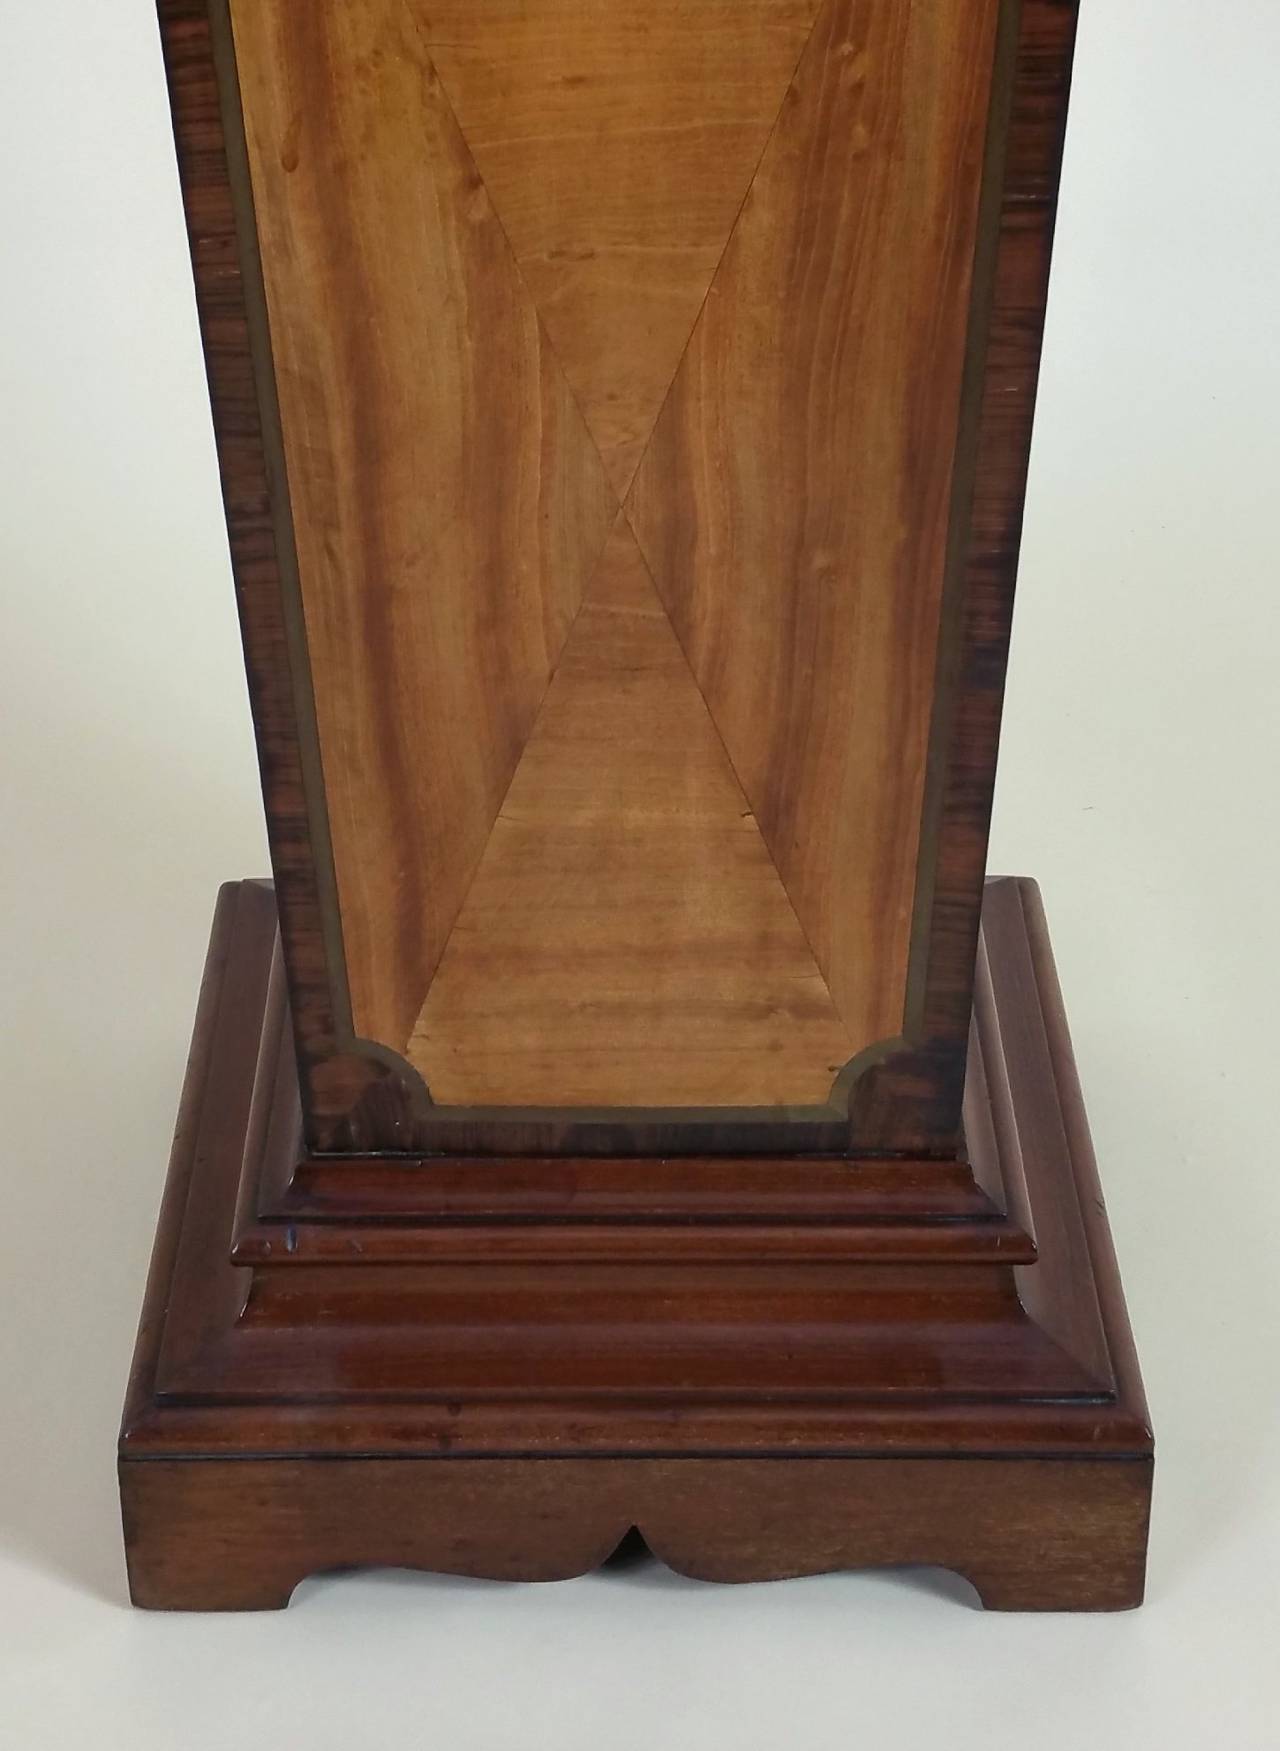 20th Century Edwardian Sheraton Revival Mahogany Pedestal